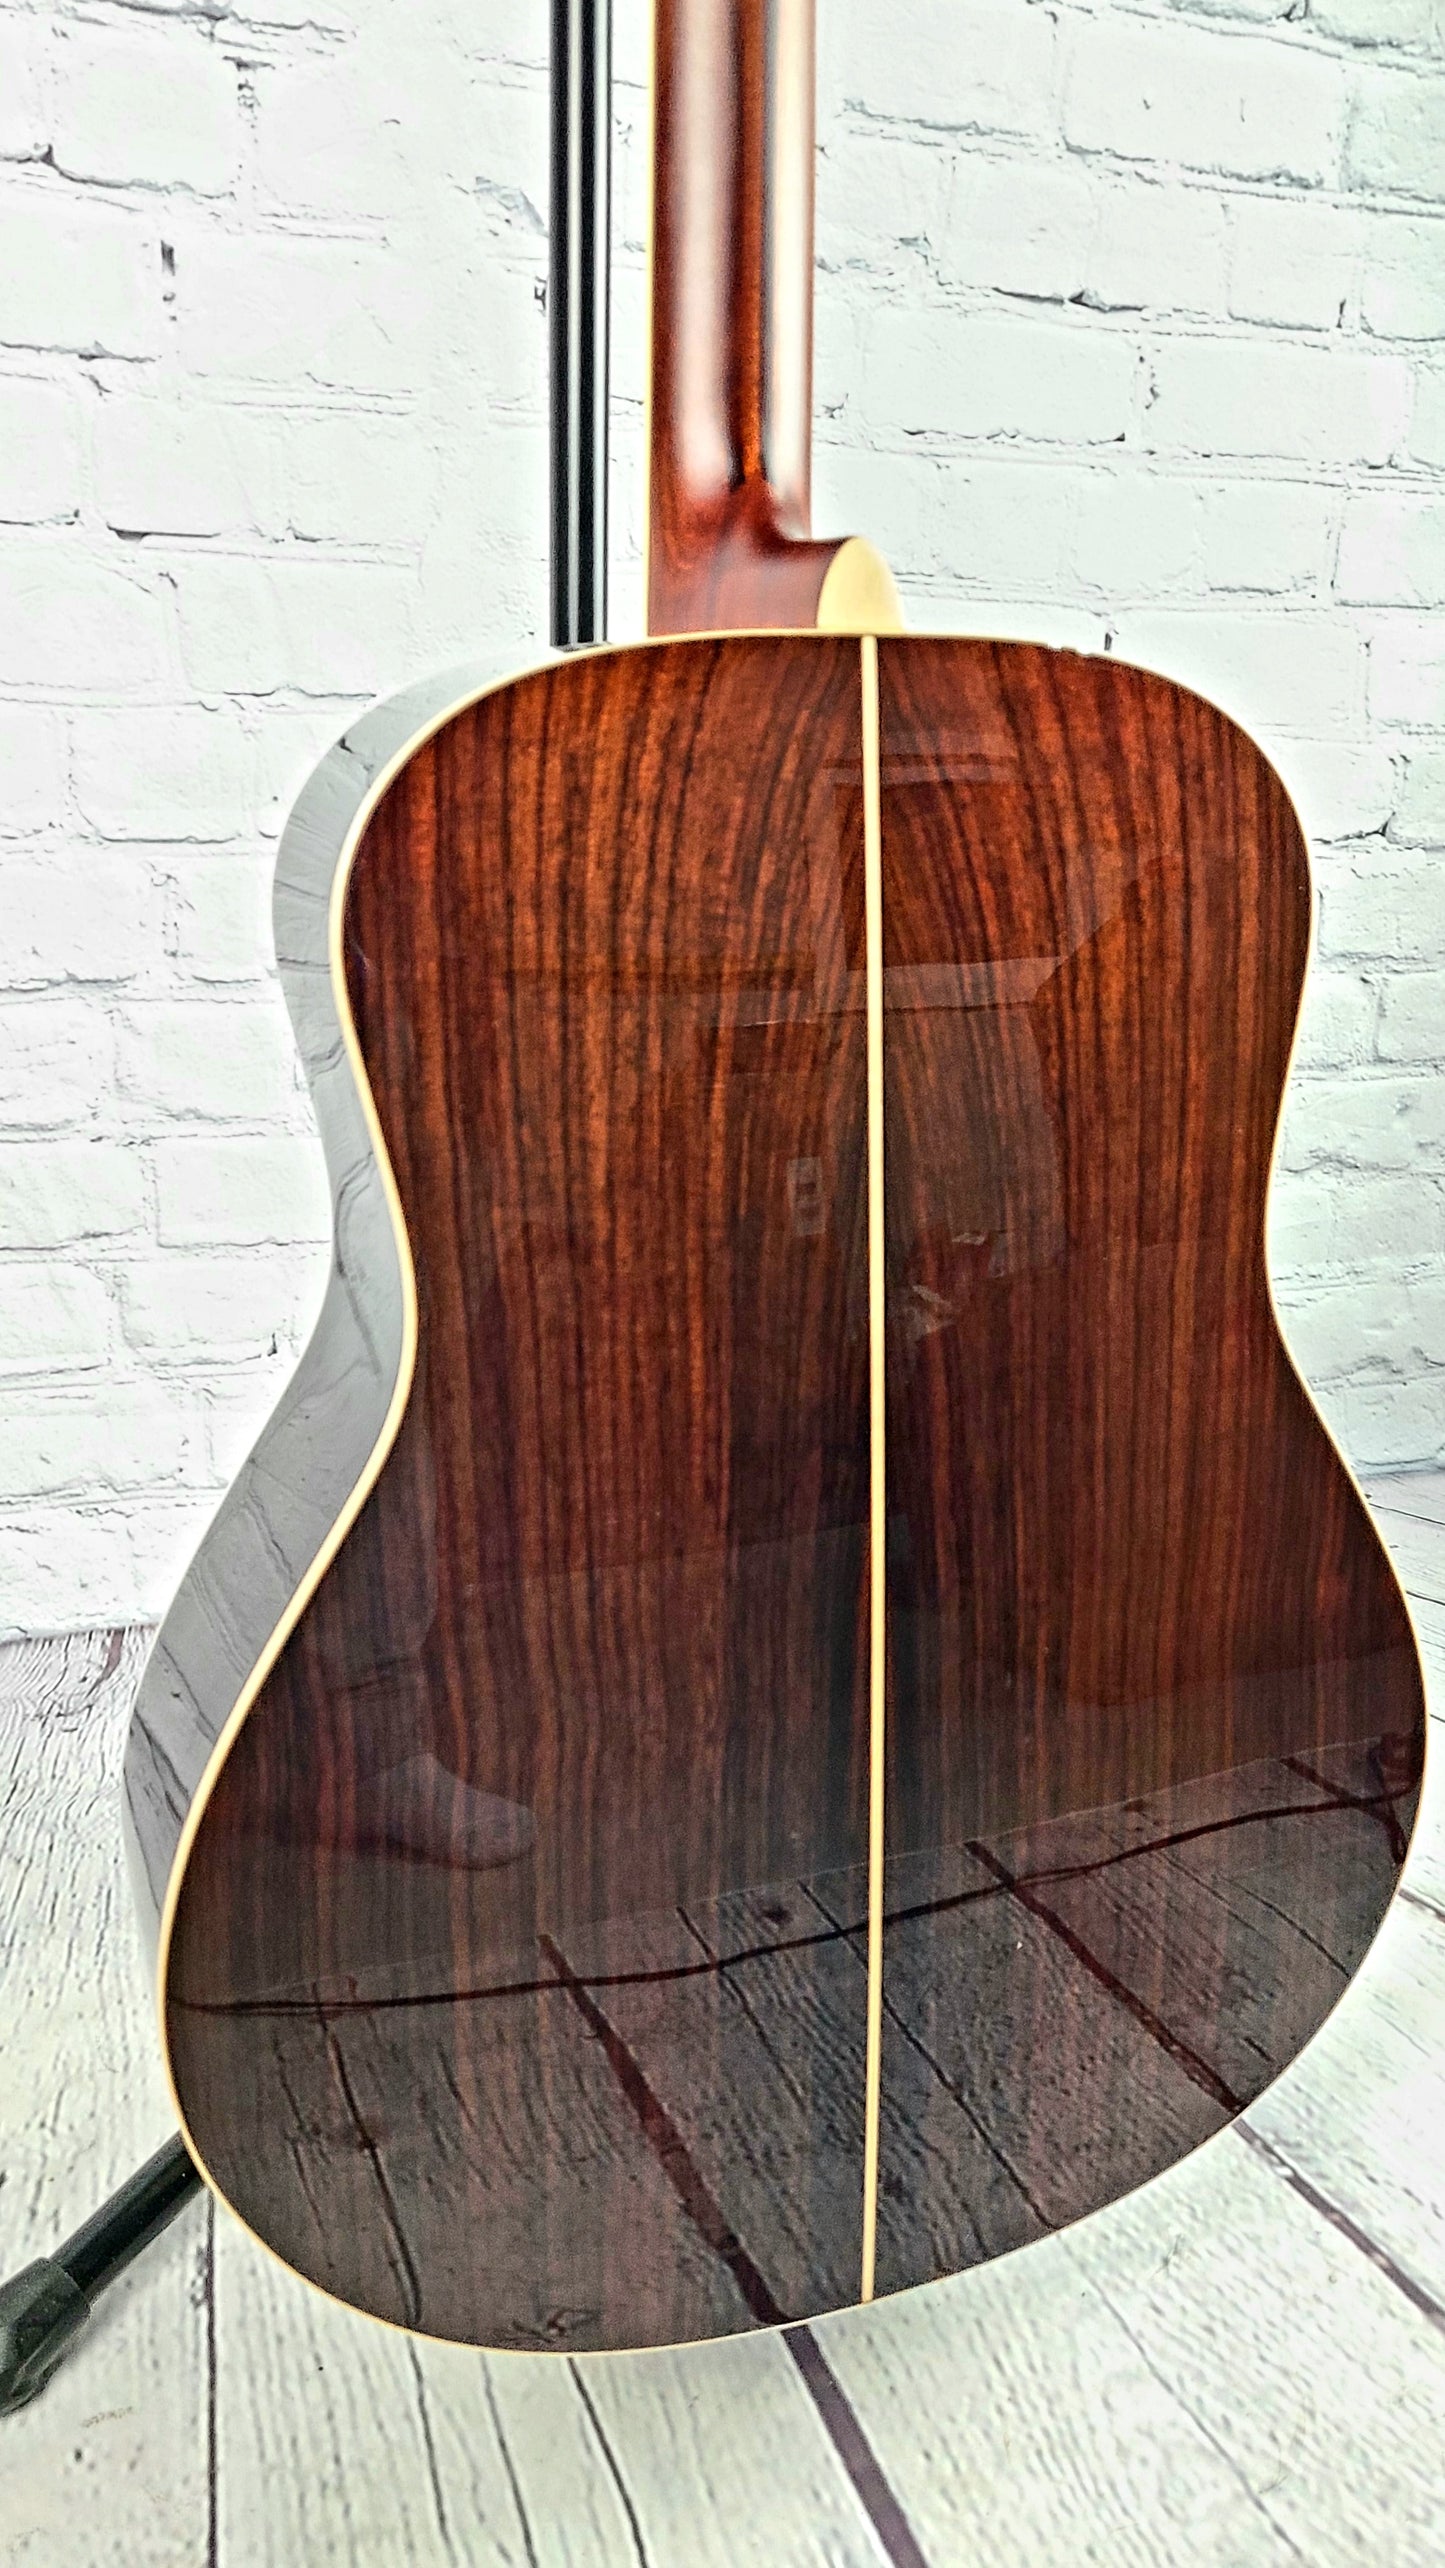 Yamaha LLTA VT TransAcoustic Acoustic Guitar Vintage Tint